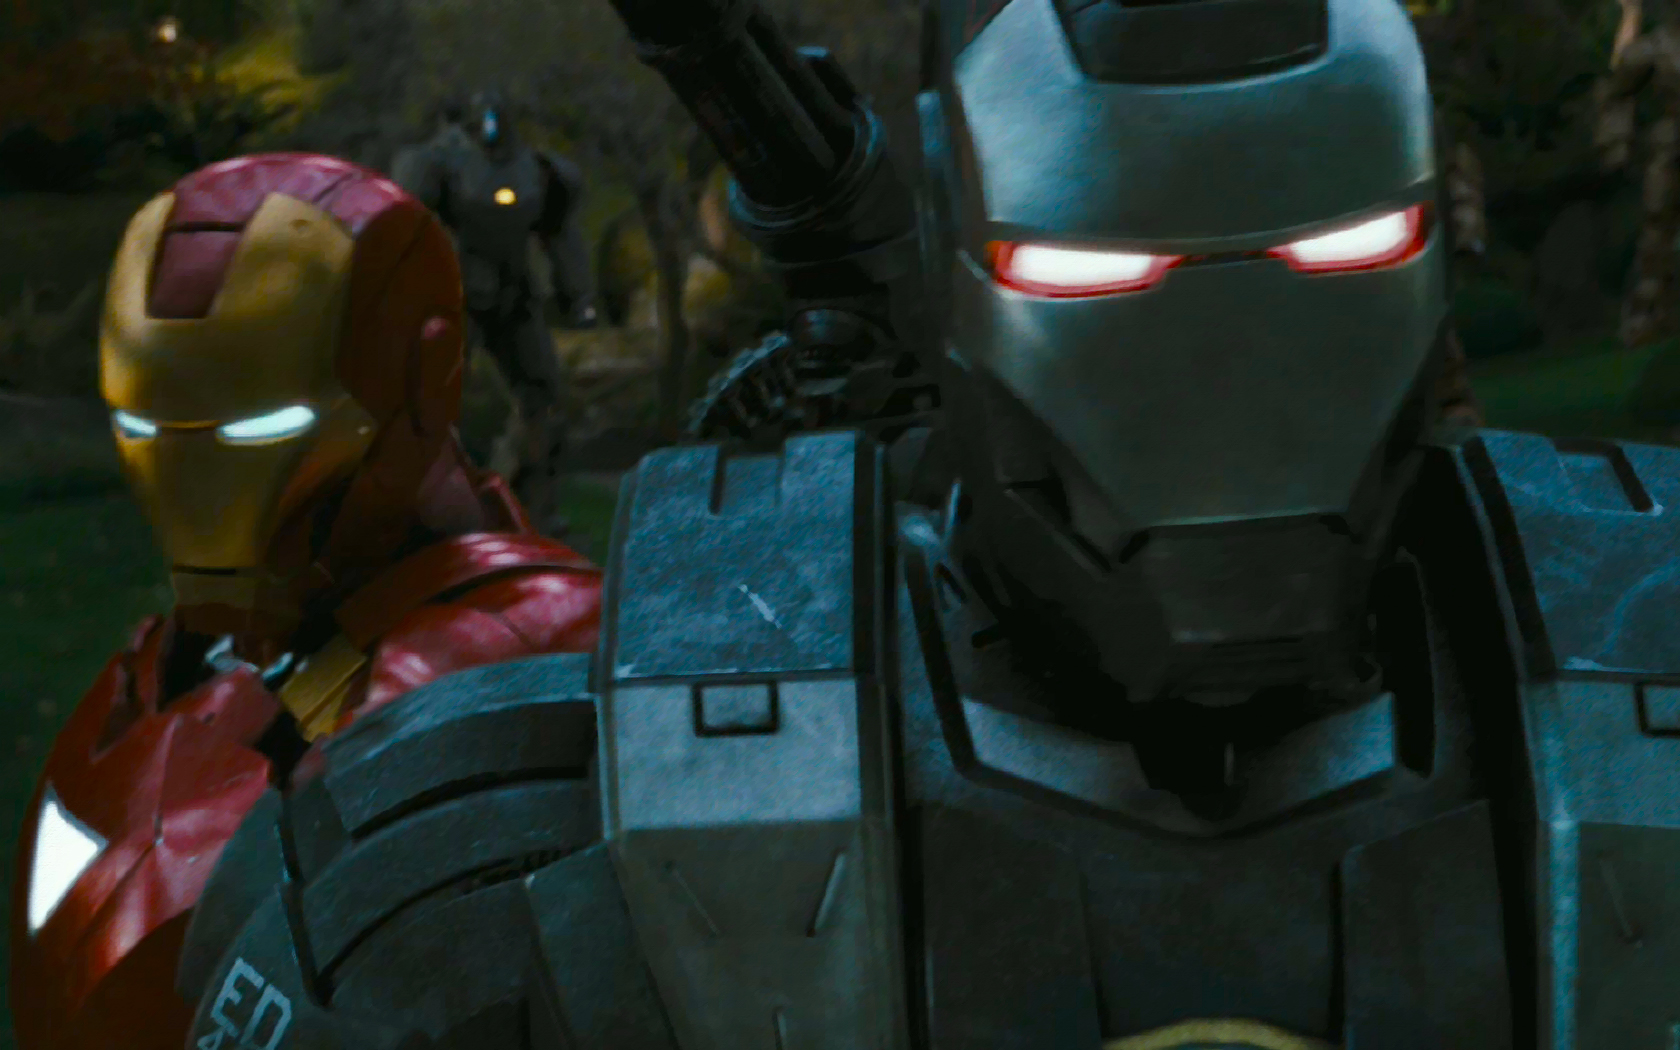 Iron Man 2 War Machine